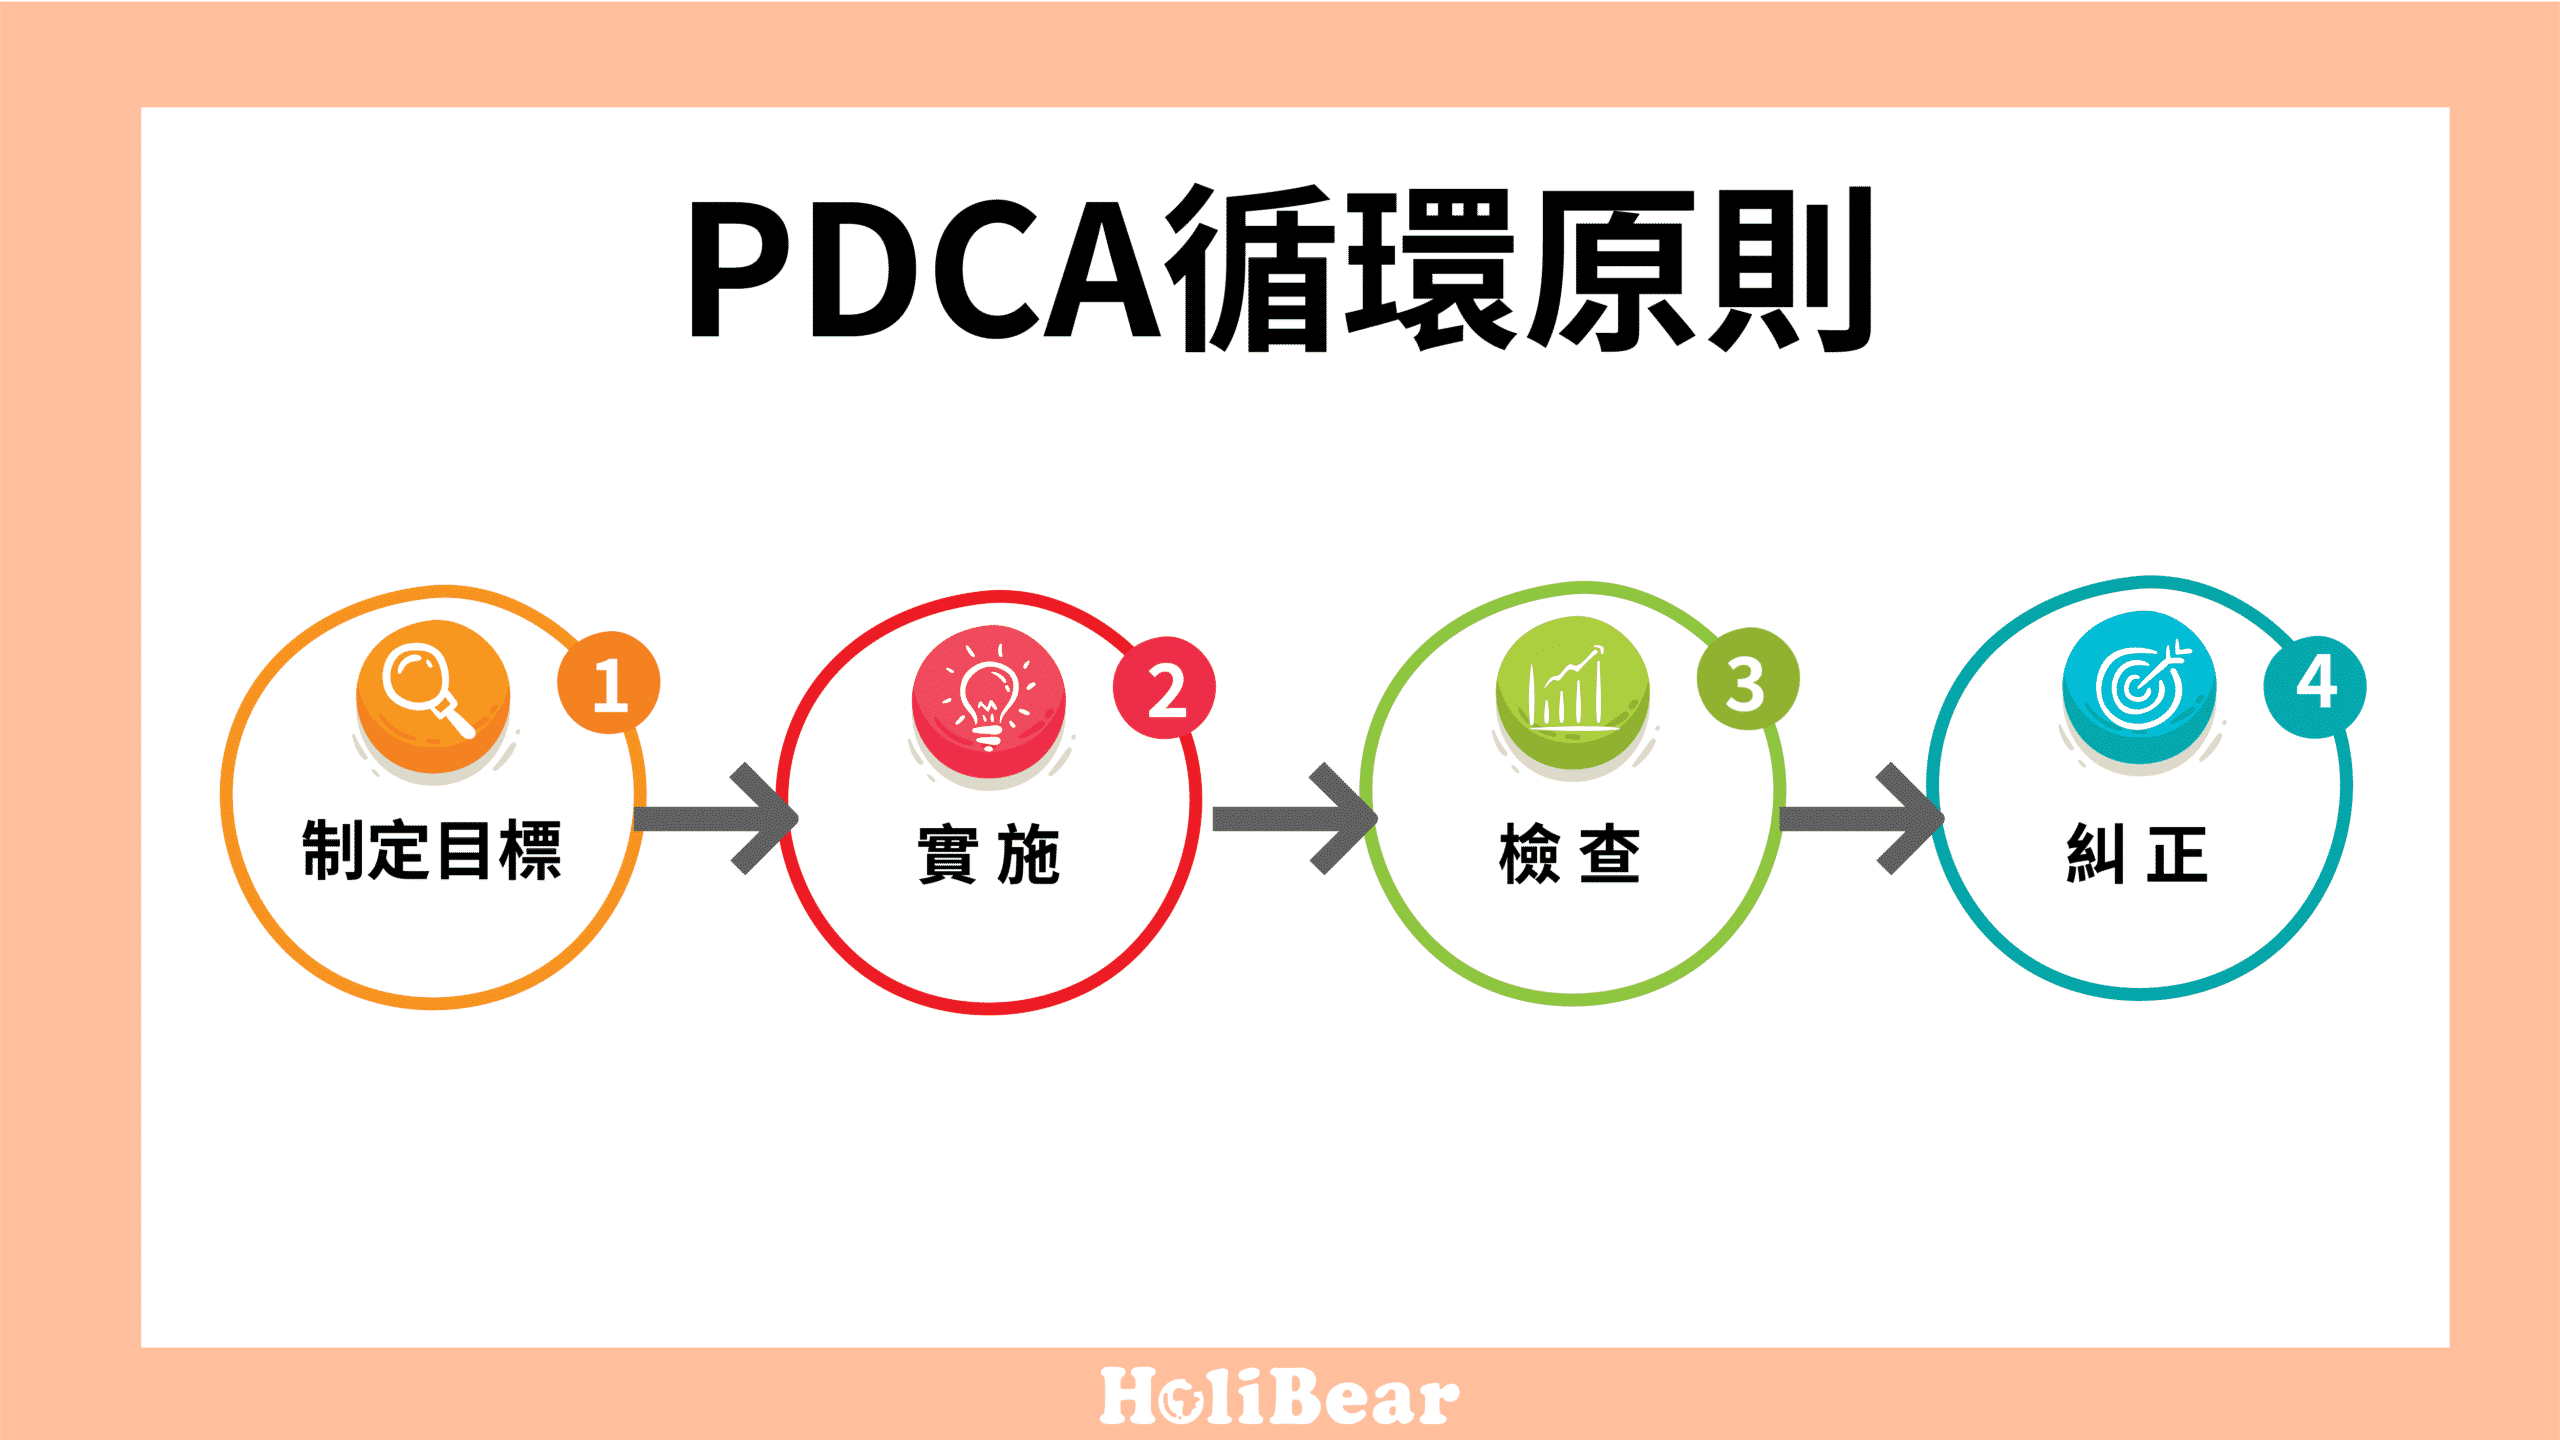 PDCA循環原則